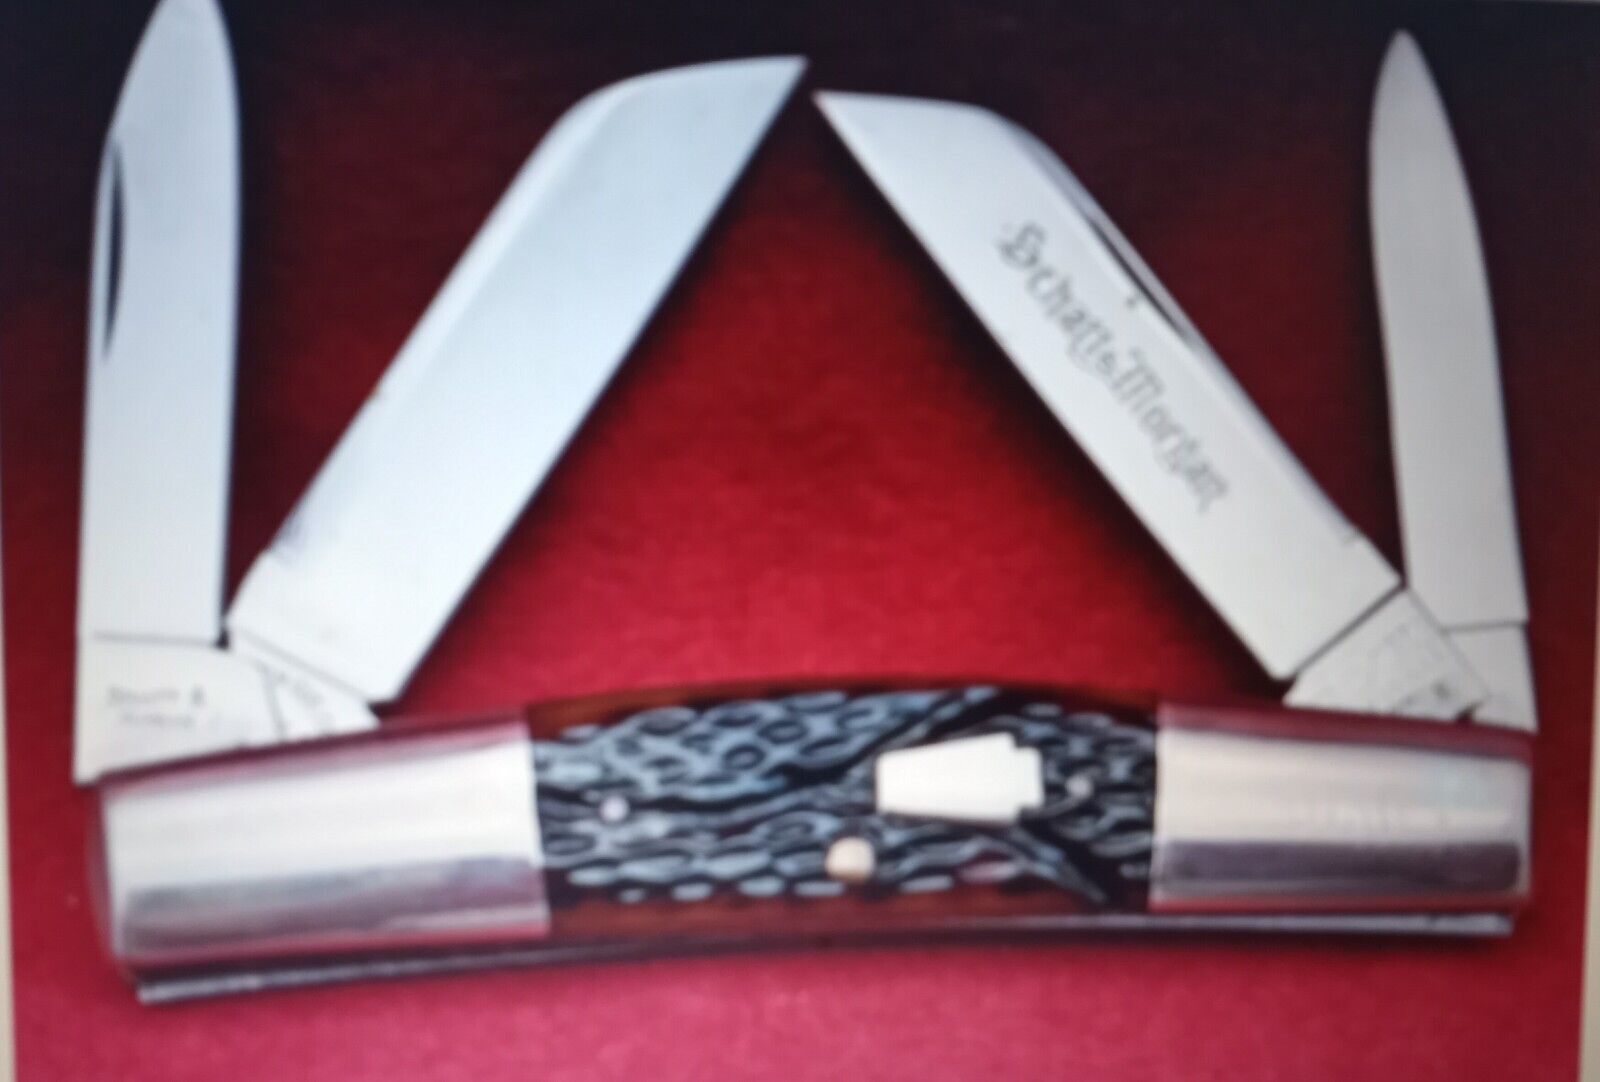 2005 NKCA Knife Schatt & Morgan Queen Cutlery LARGE CONGRESS 1 of 680 MINT NR